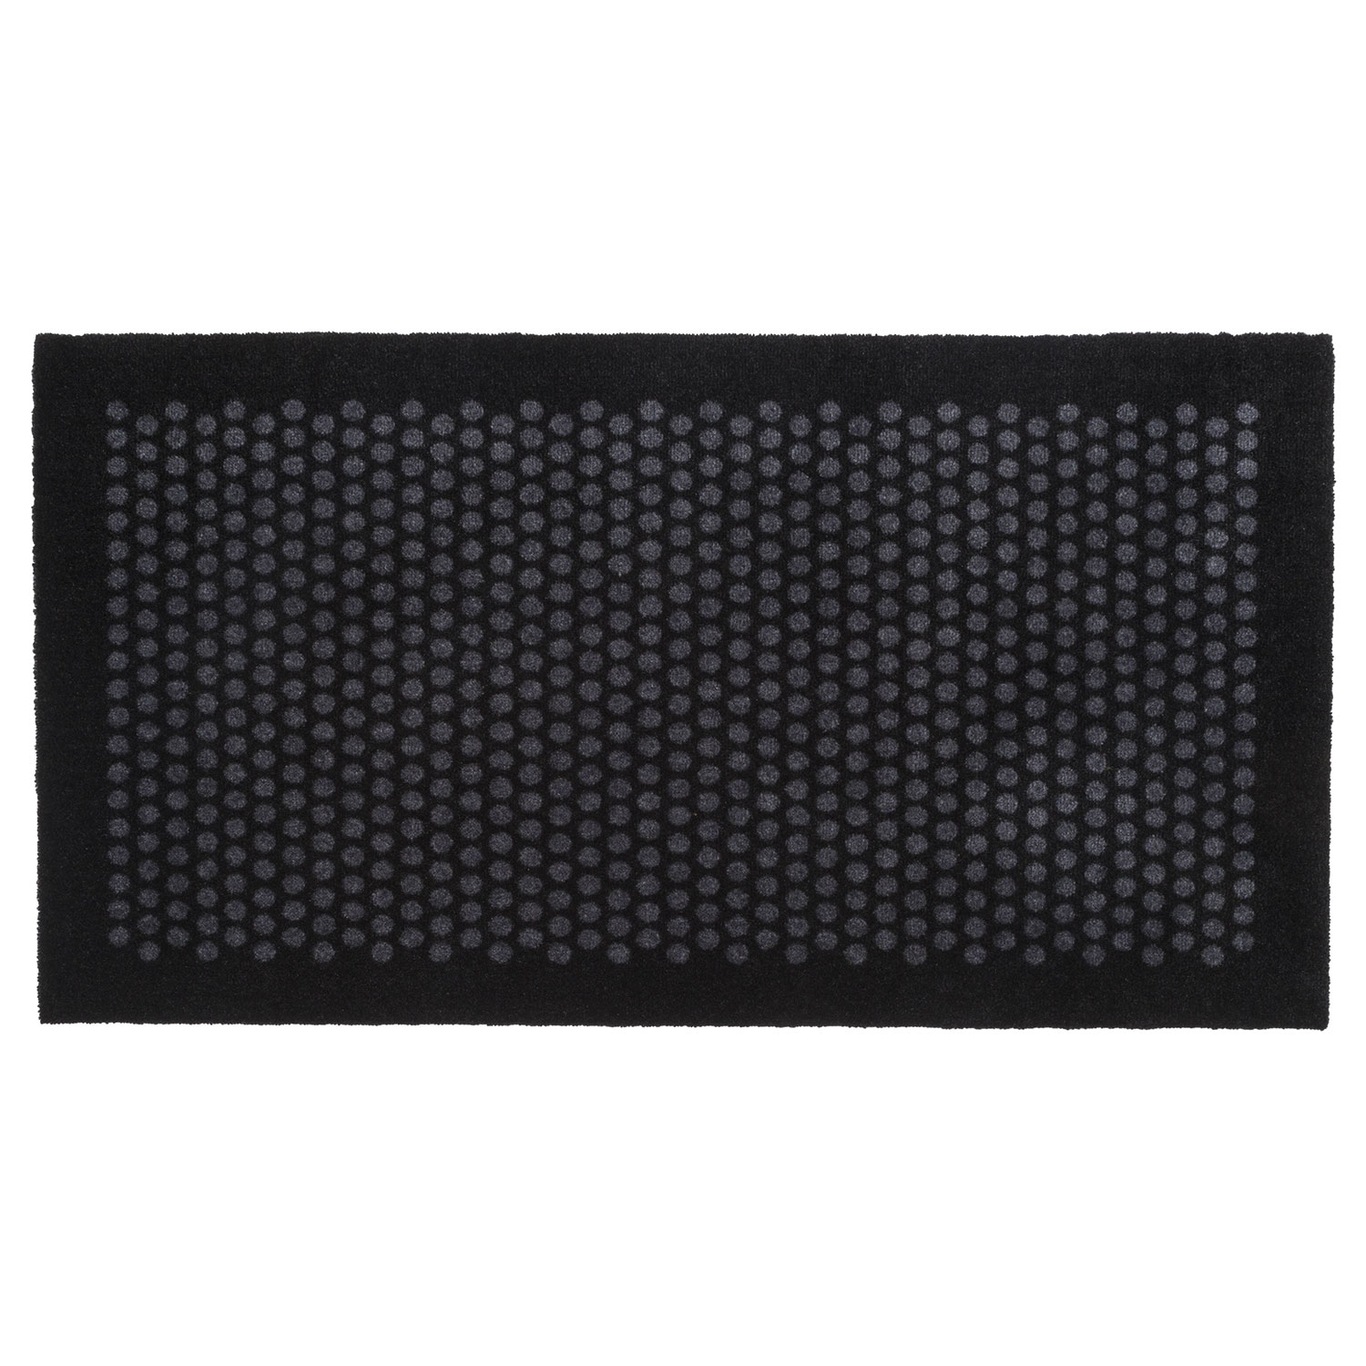 Dot Doormat 67x120cm, Black/Grey